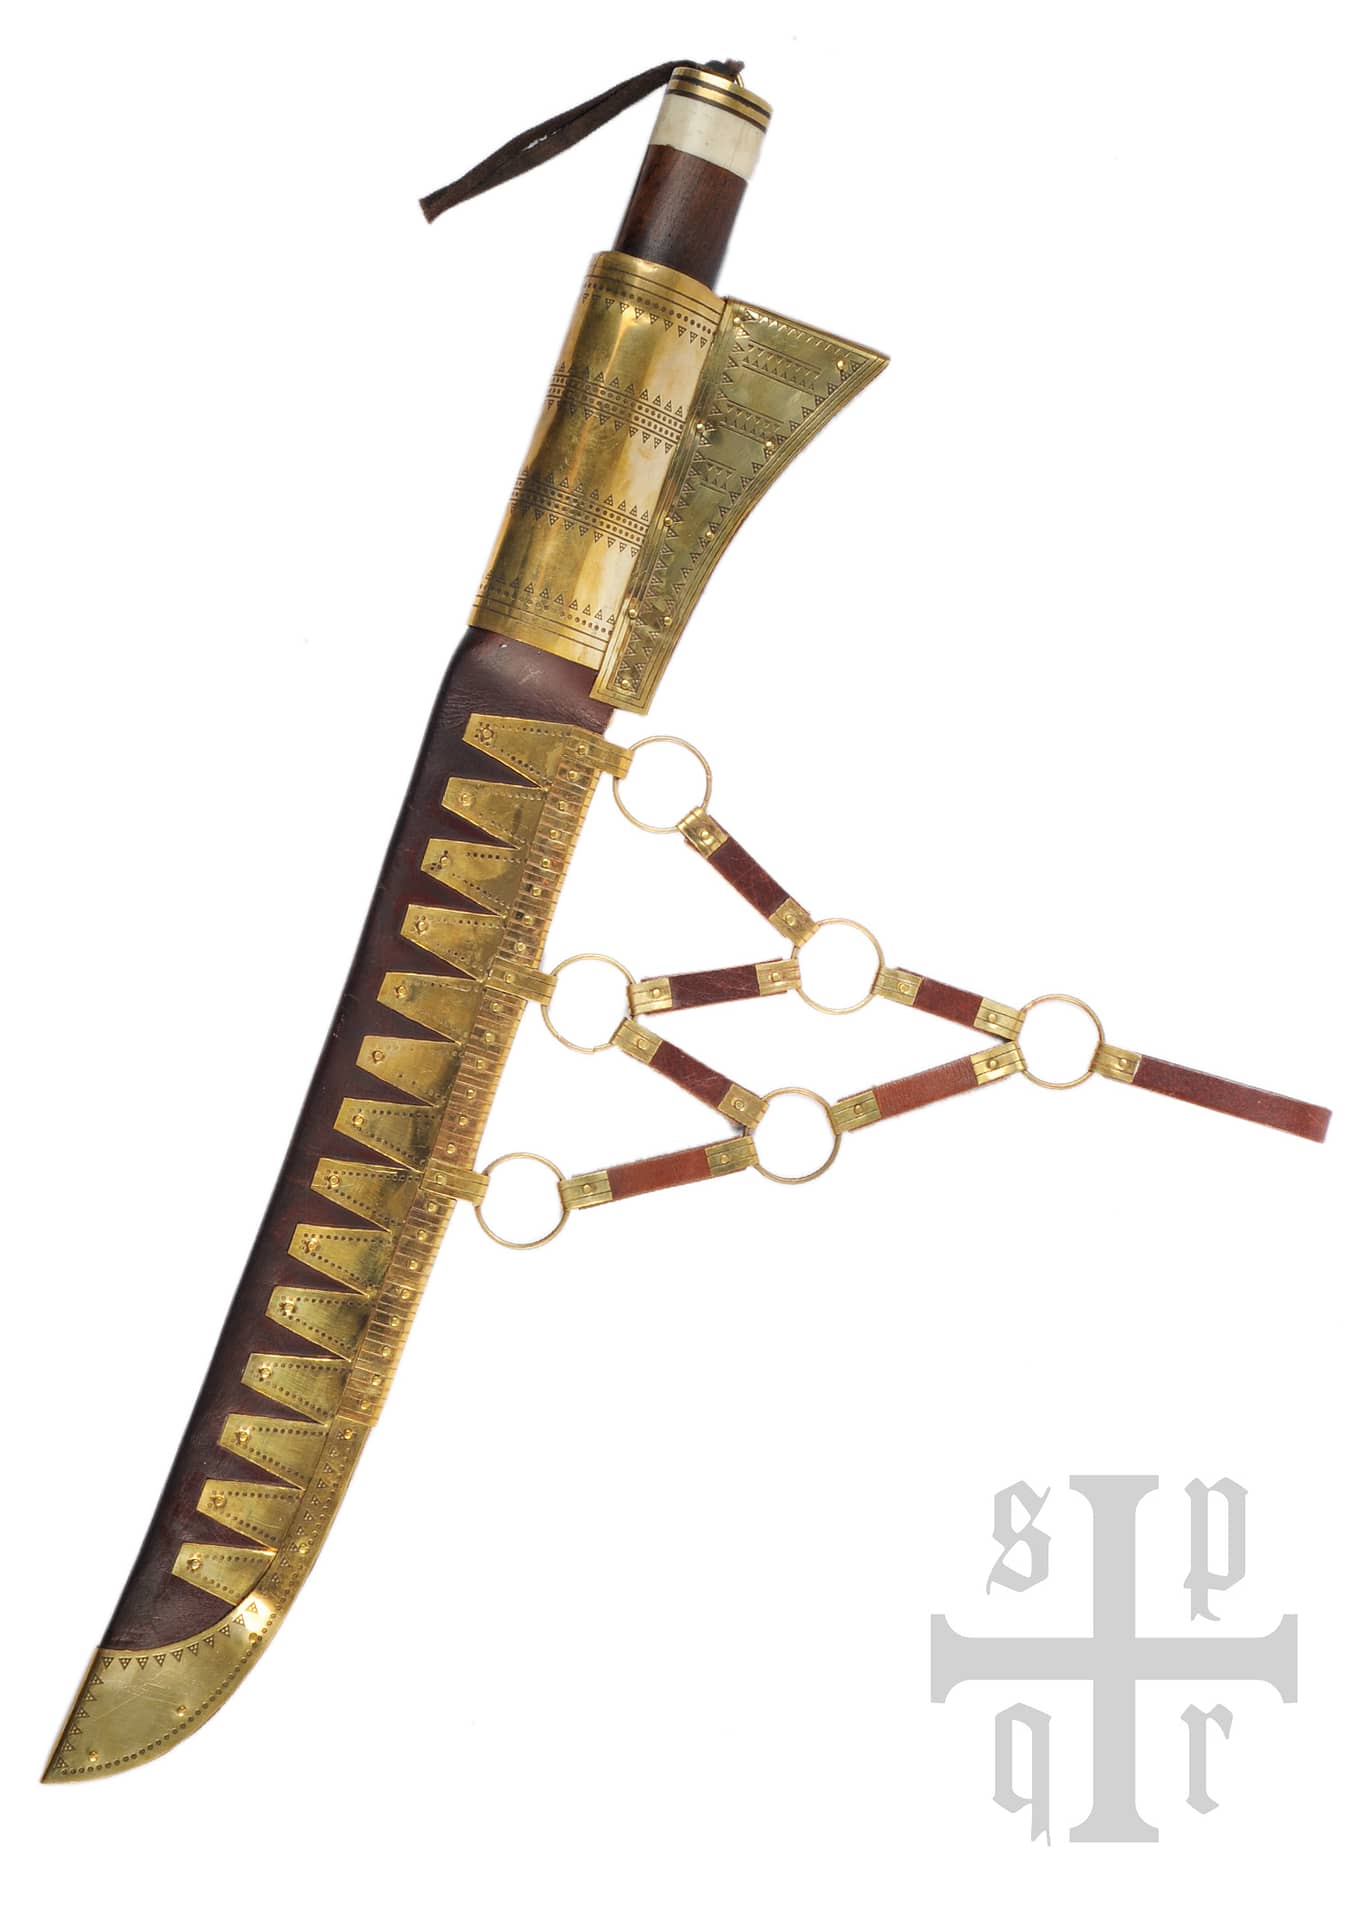 Cuchillo Vikingo Seax, Acero Damasco, Mango de Madera / Hueso 0364002660 - Espadas y Más